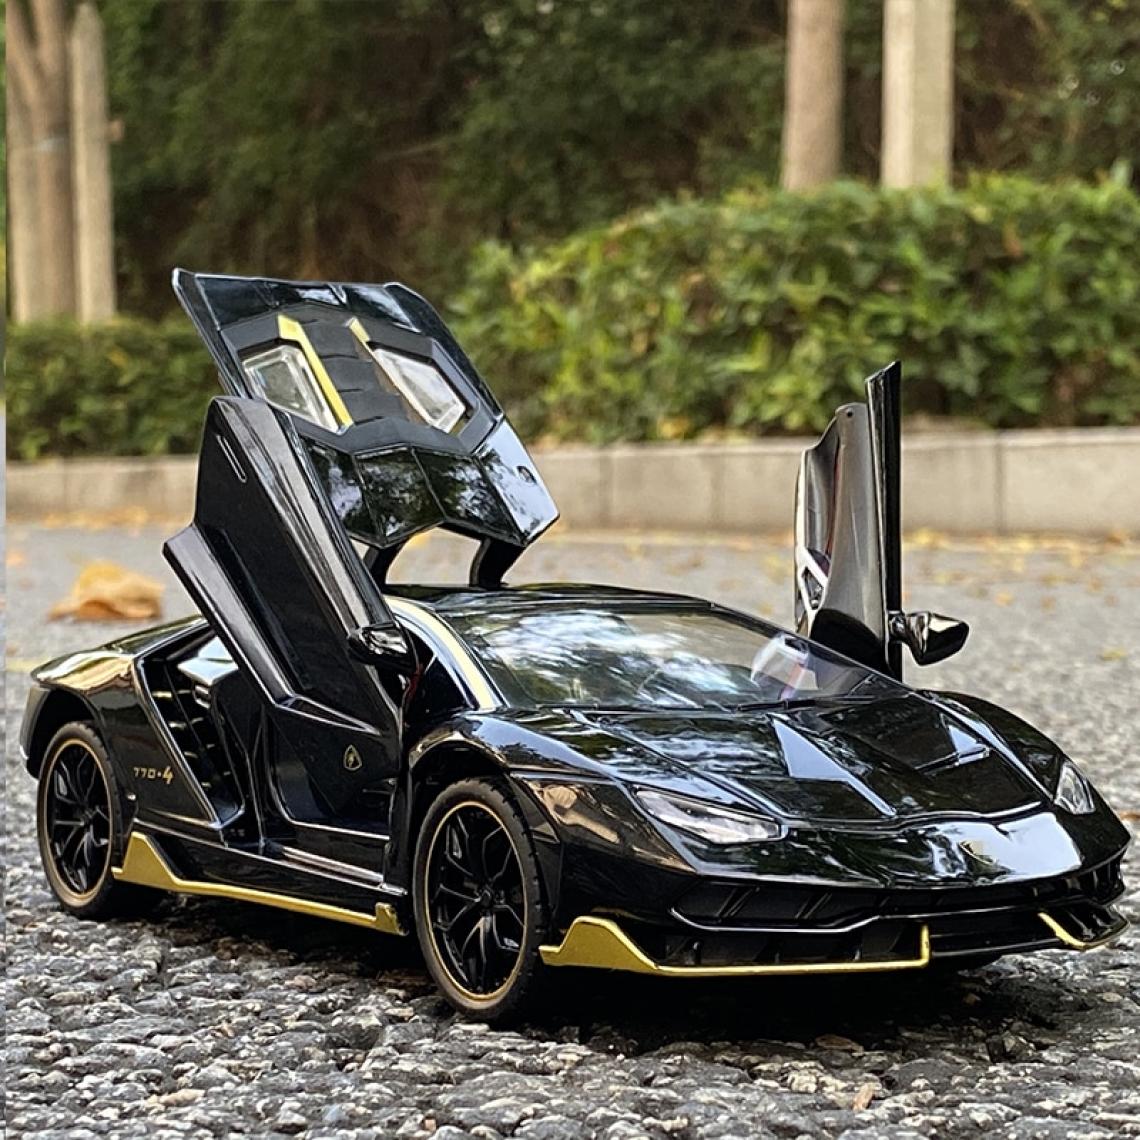 Universal - 1: 24 Lamborghini LP770 Sport Alliage Modèle de voiture jouet moulée sous pression Modèle de voiture jouet collection métal Jouet Cadeau pour enfants | Voiture jouet moulée sous pression (noir) - Voitures